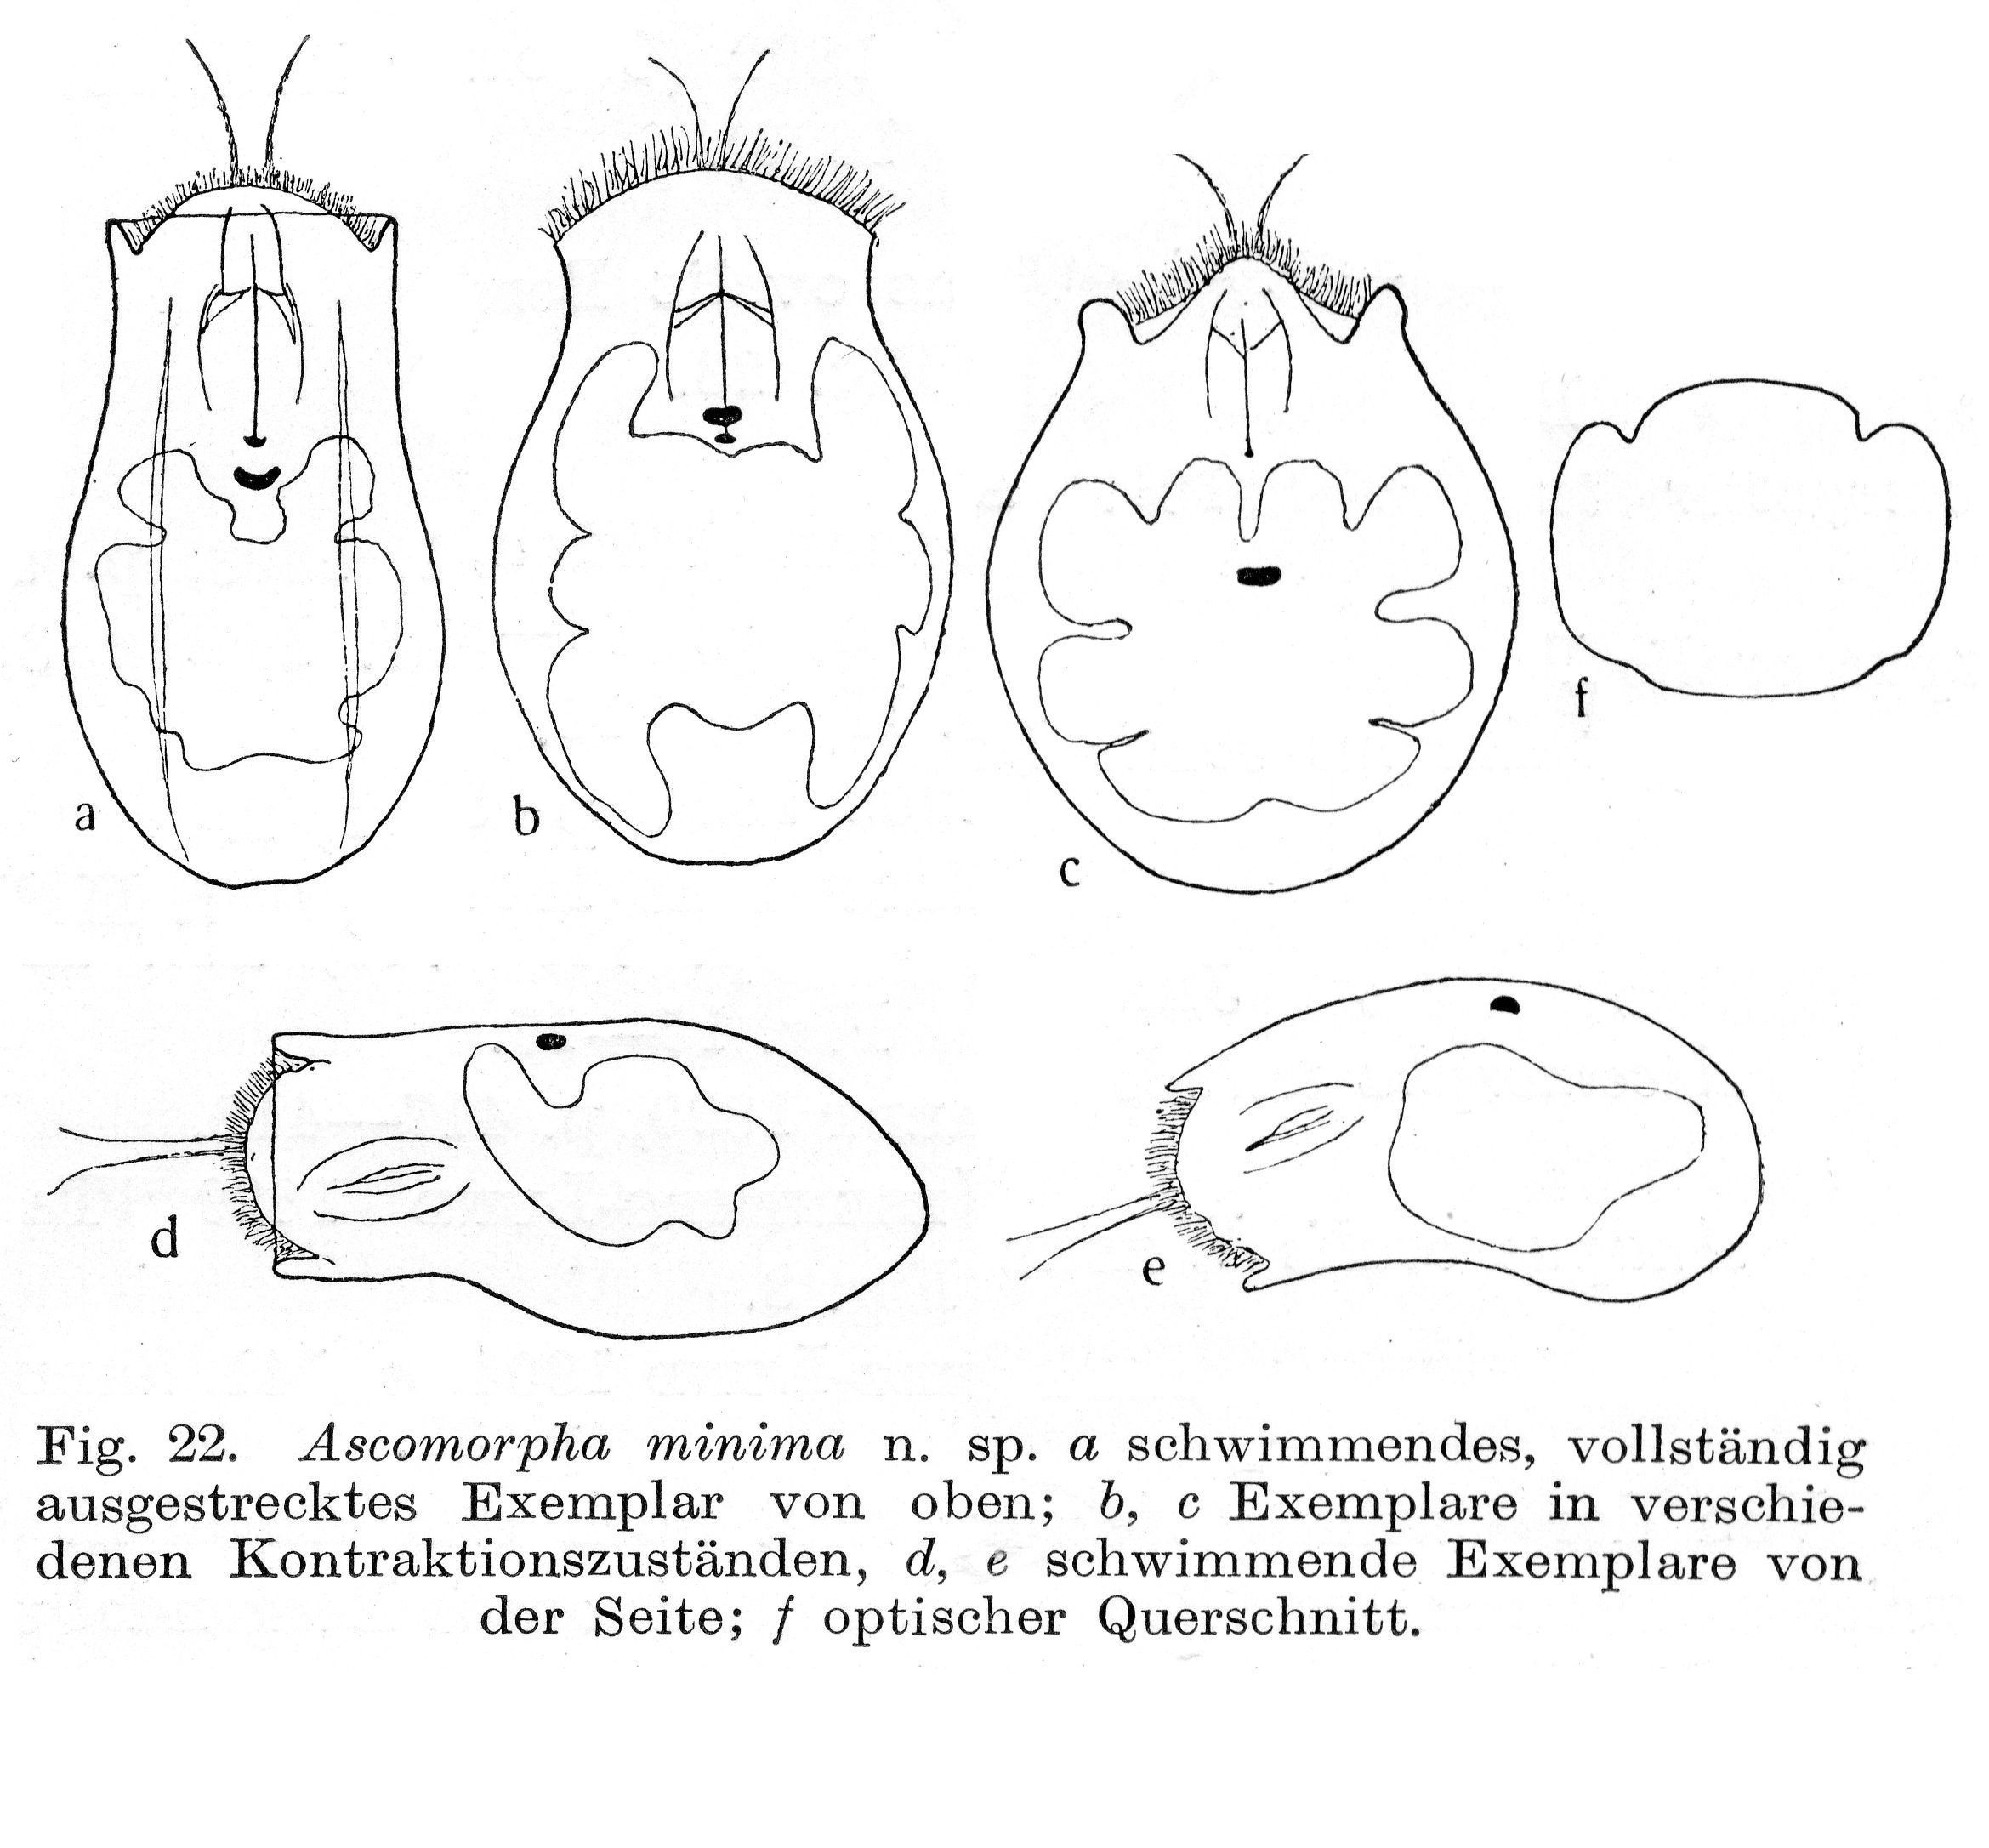 Image of Ascomorpha minima von Hofsten 1909